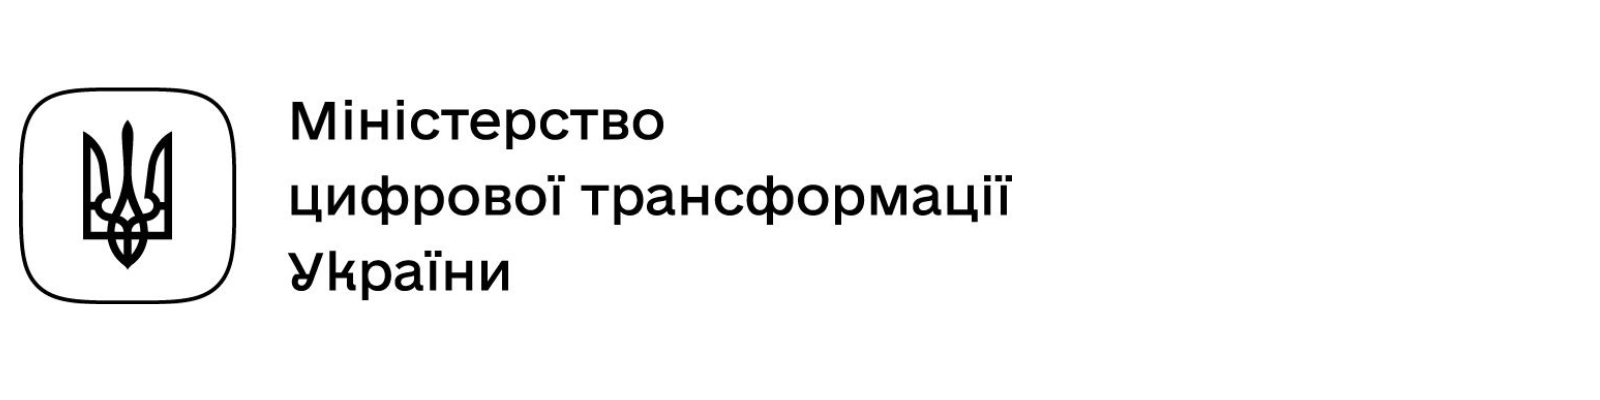 Логотип Міністерство цифрової трансформації України